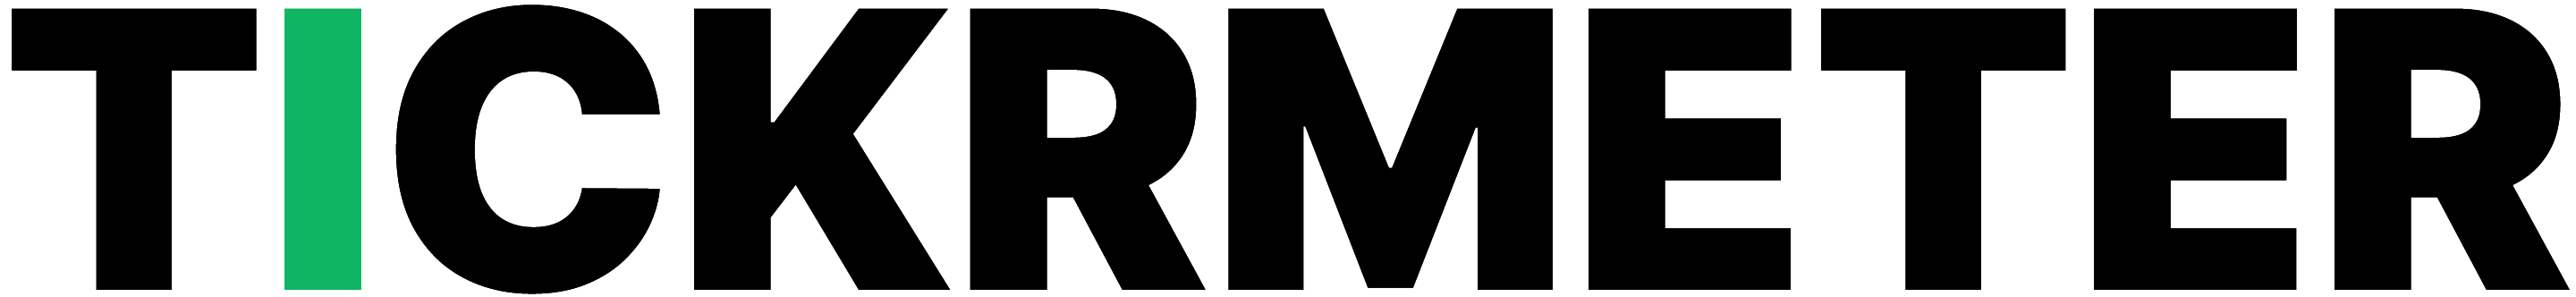 TickrMeter logo